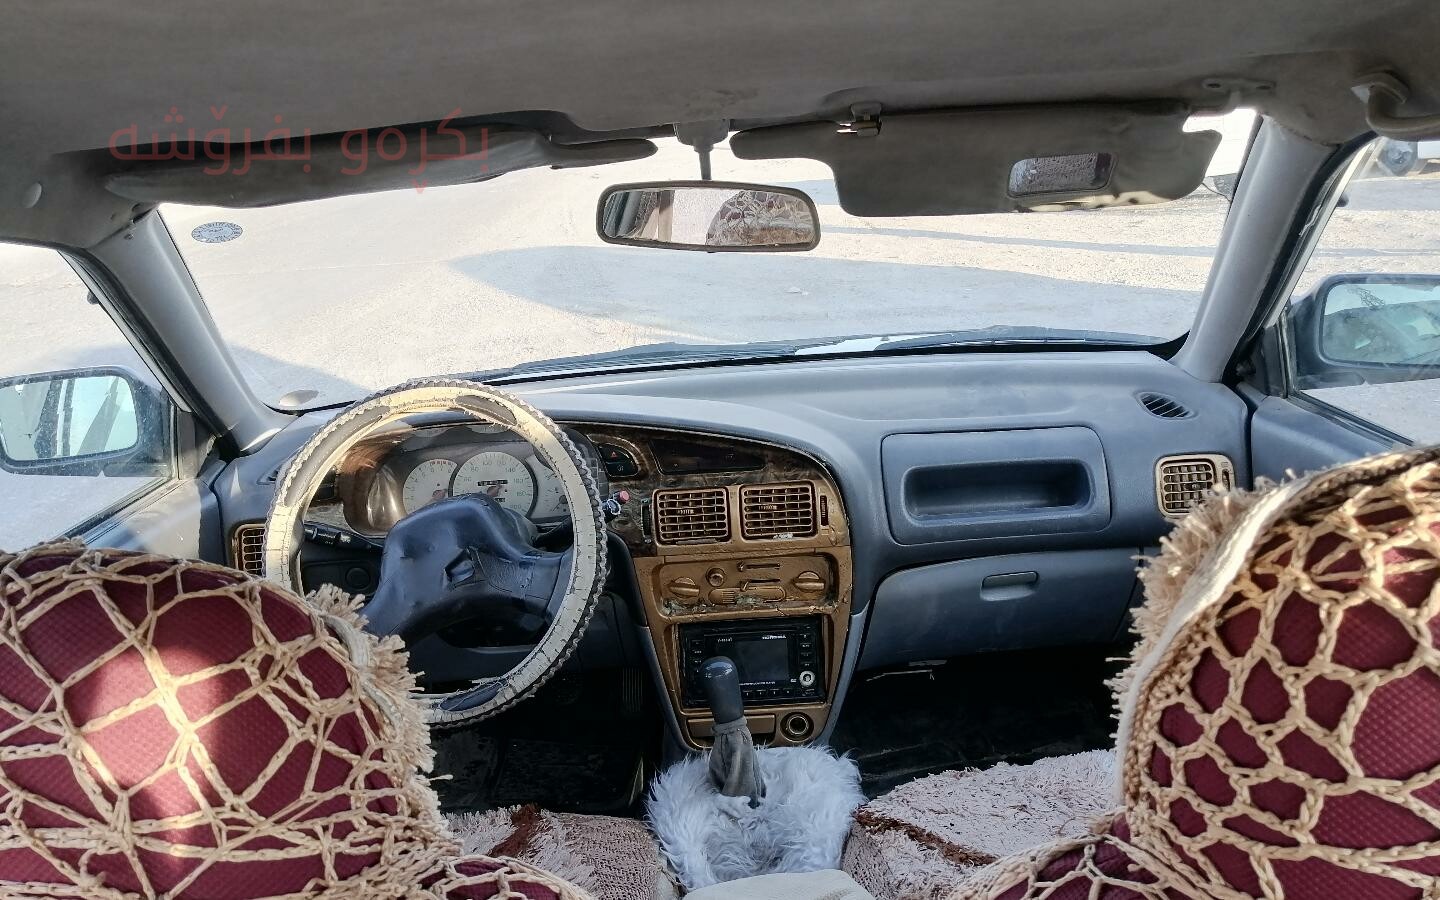 فرۆشتنی خێر ، پڕۆتۆنی تاکسی کوردستان مۆدێل 2002